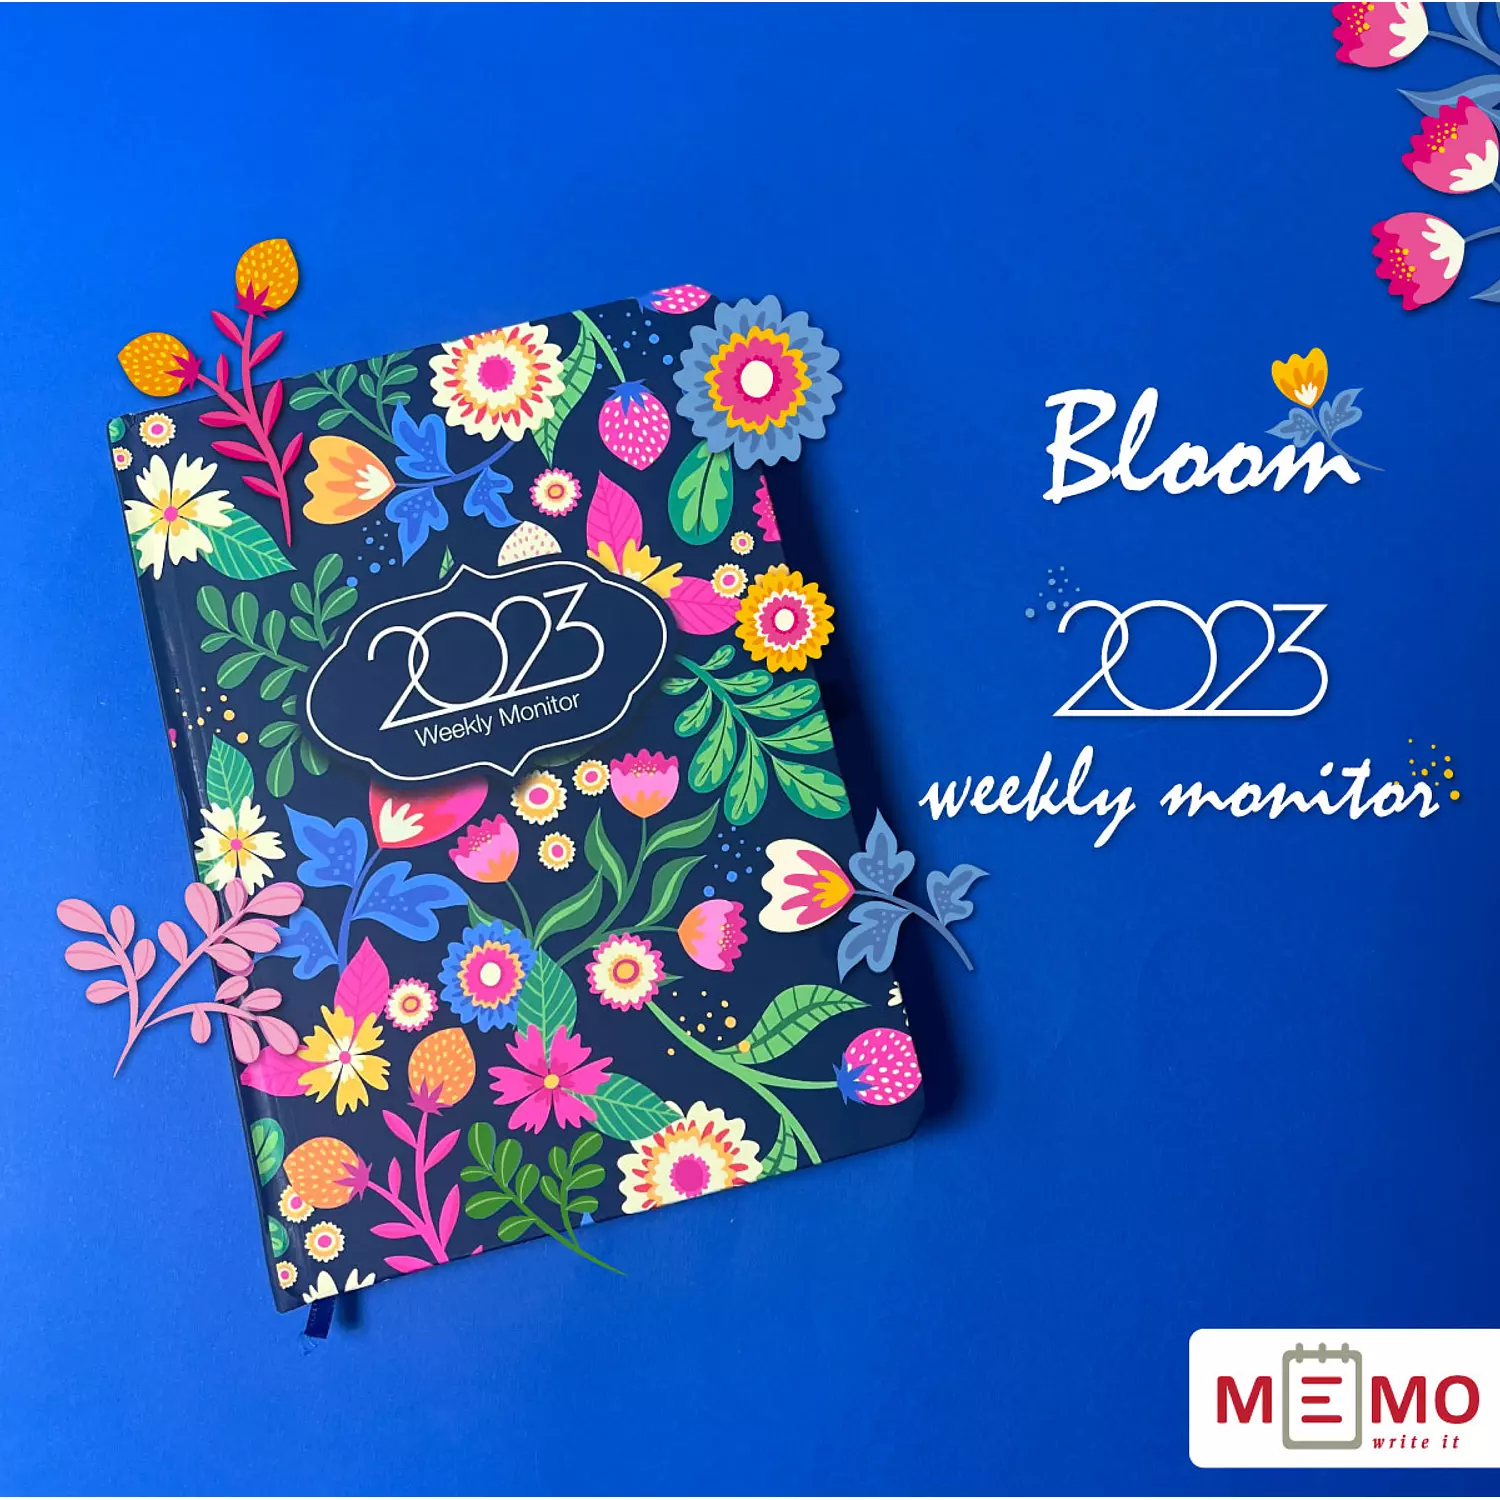 Memo Weekly Monitor (Bloom) 2023 4